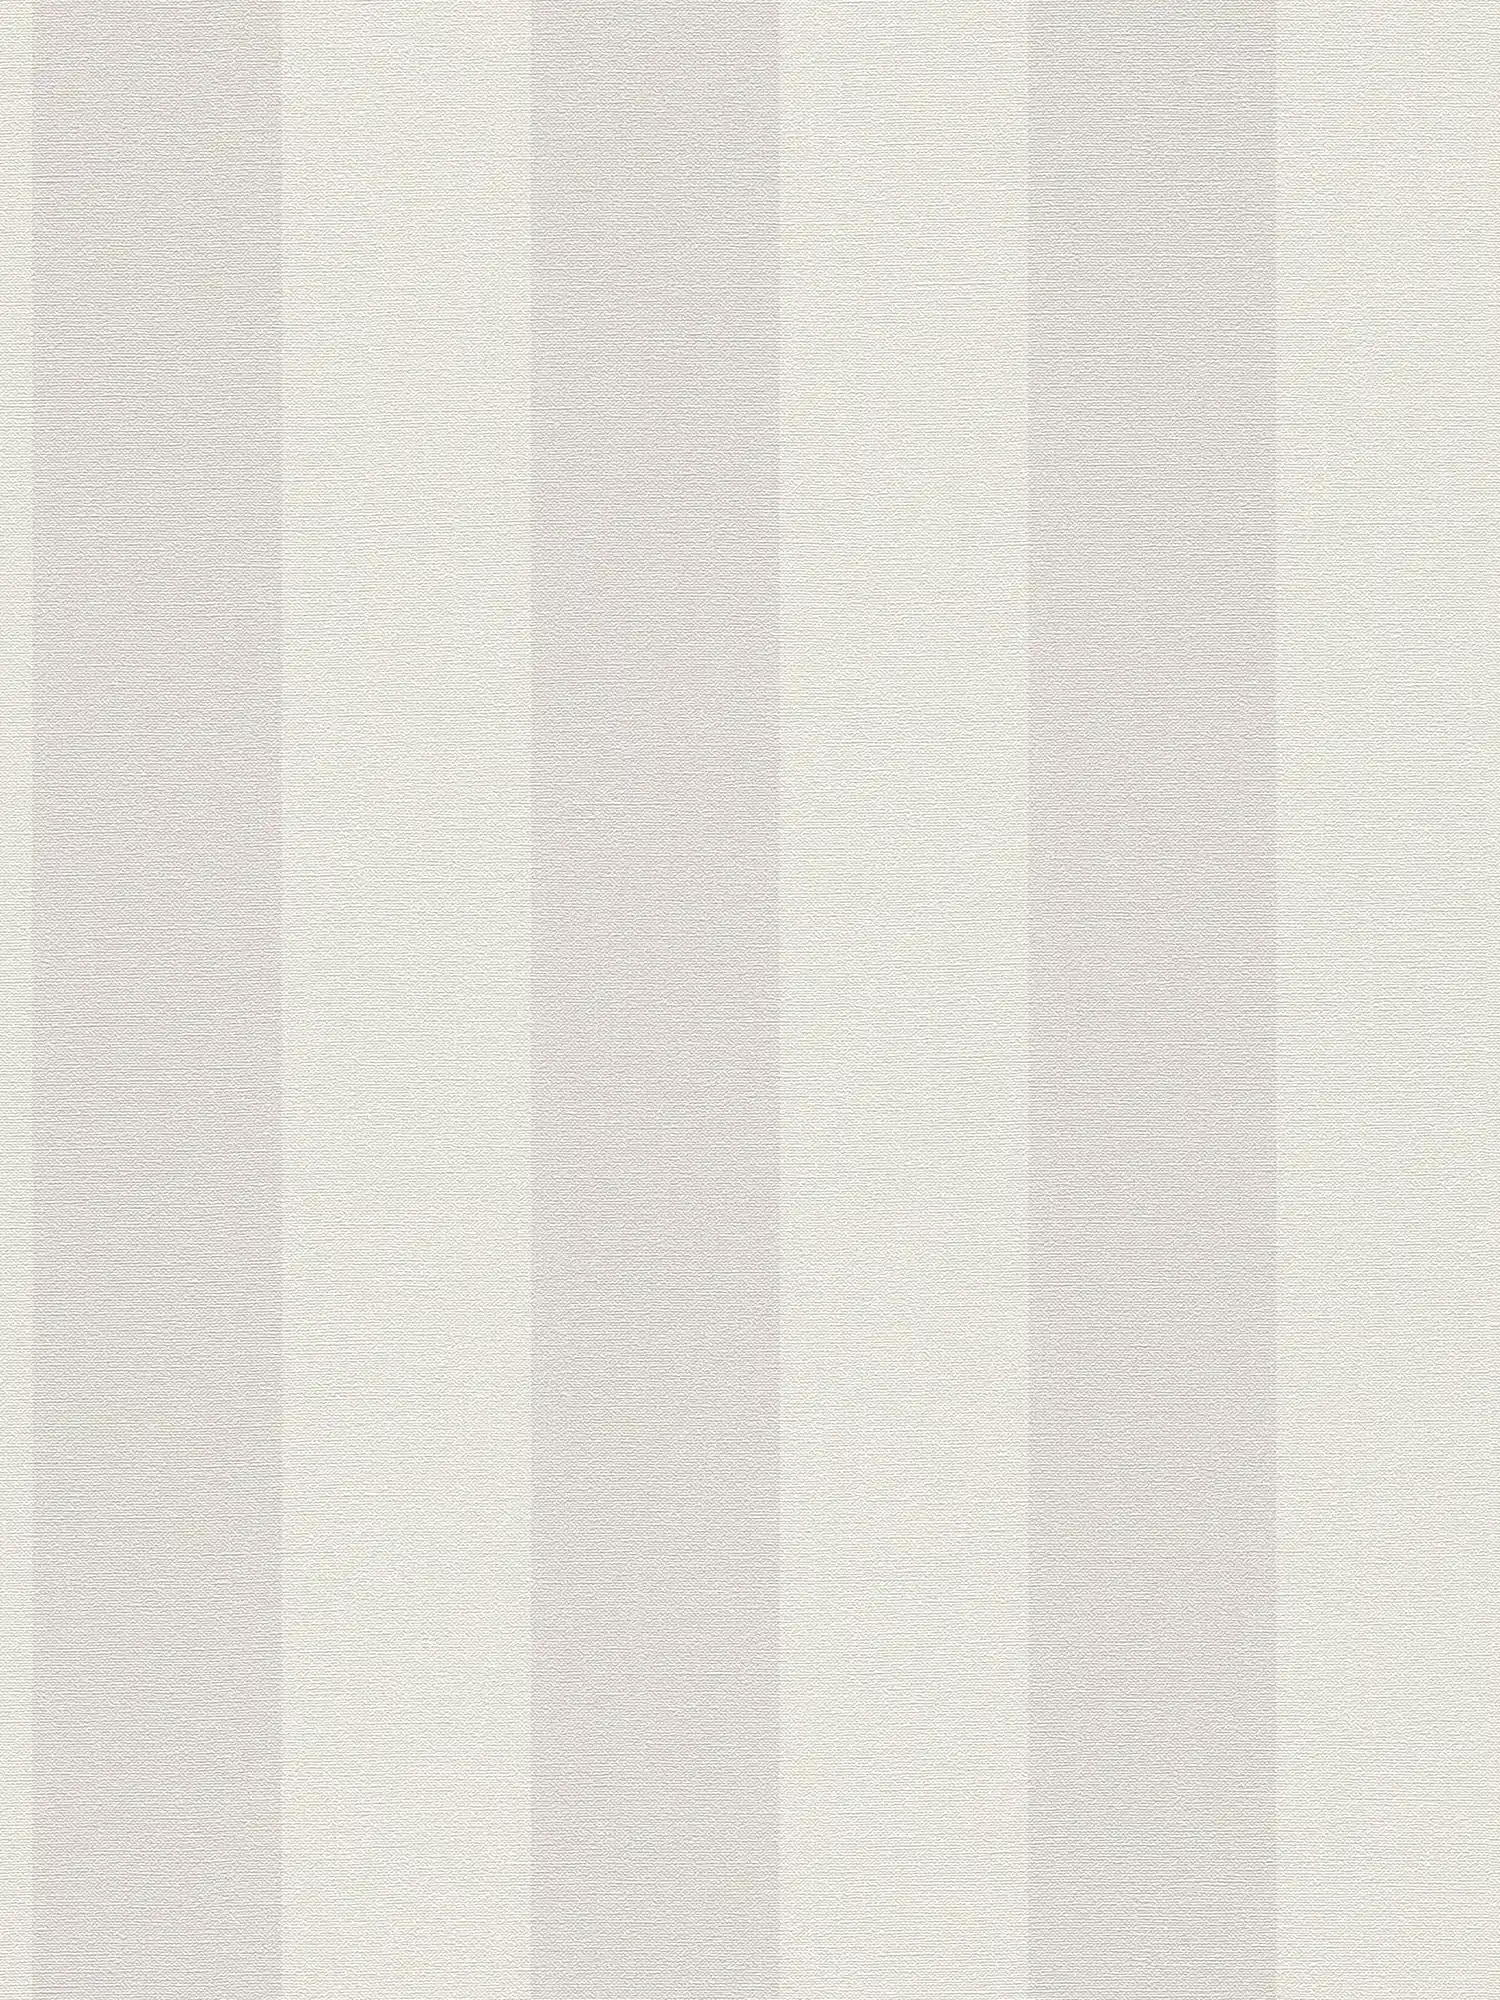 Gestreept vliesbehang met linnenlook PVC-vrij - grijs, wit
